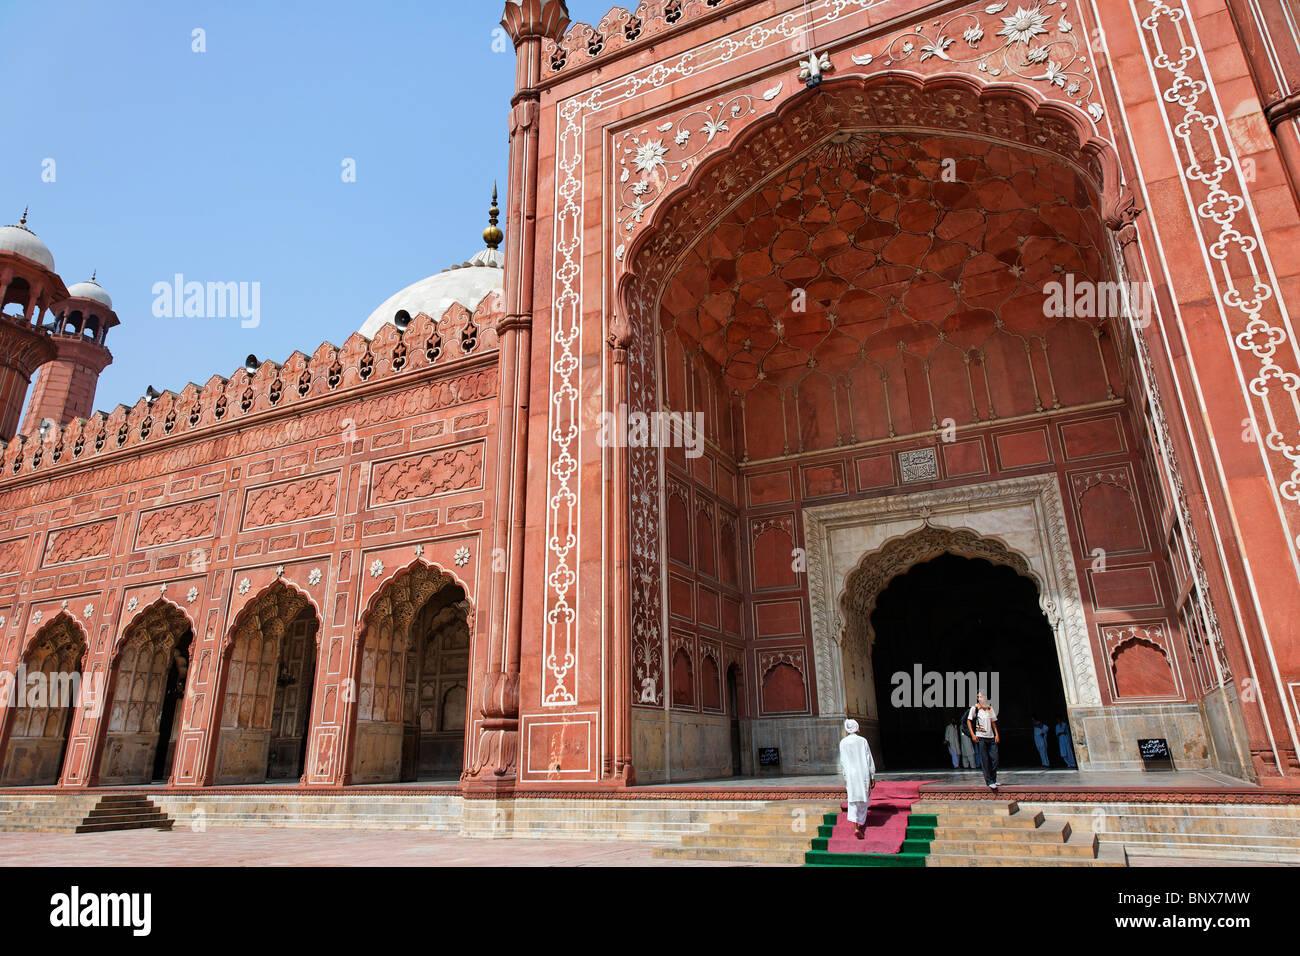 Pakistan - Punjab - Lahore - Badshahi mosque Stock Photo